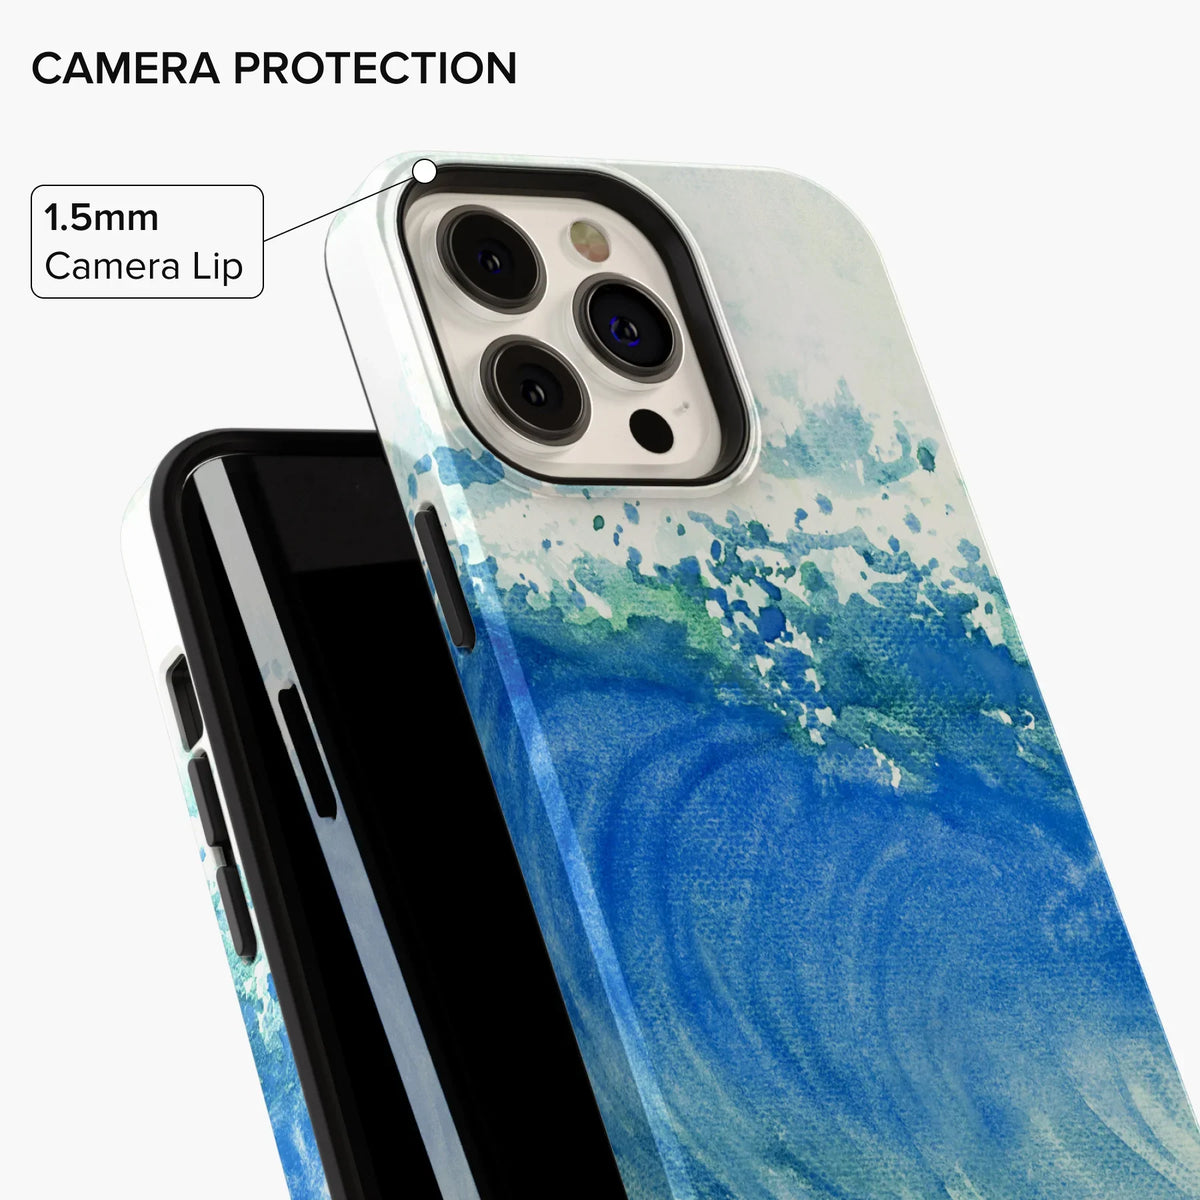 Oceanic Euphoria iPhone Case - iPhone 12 Pro